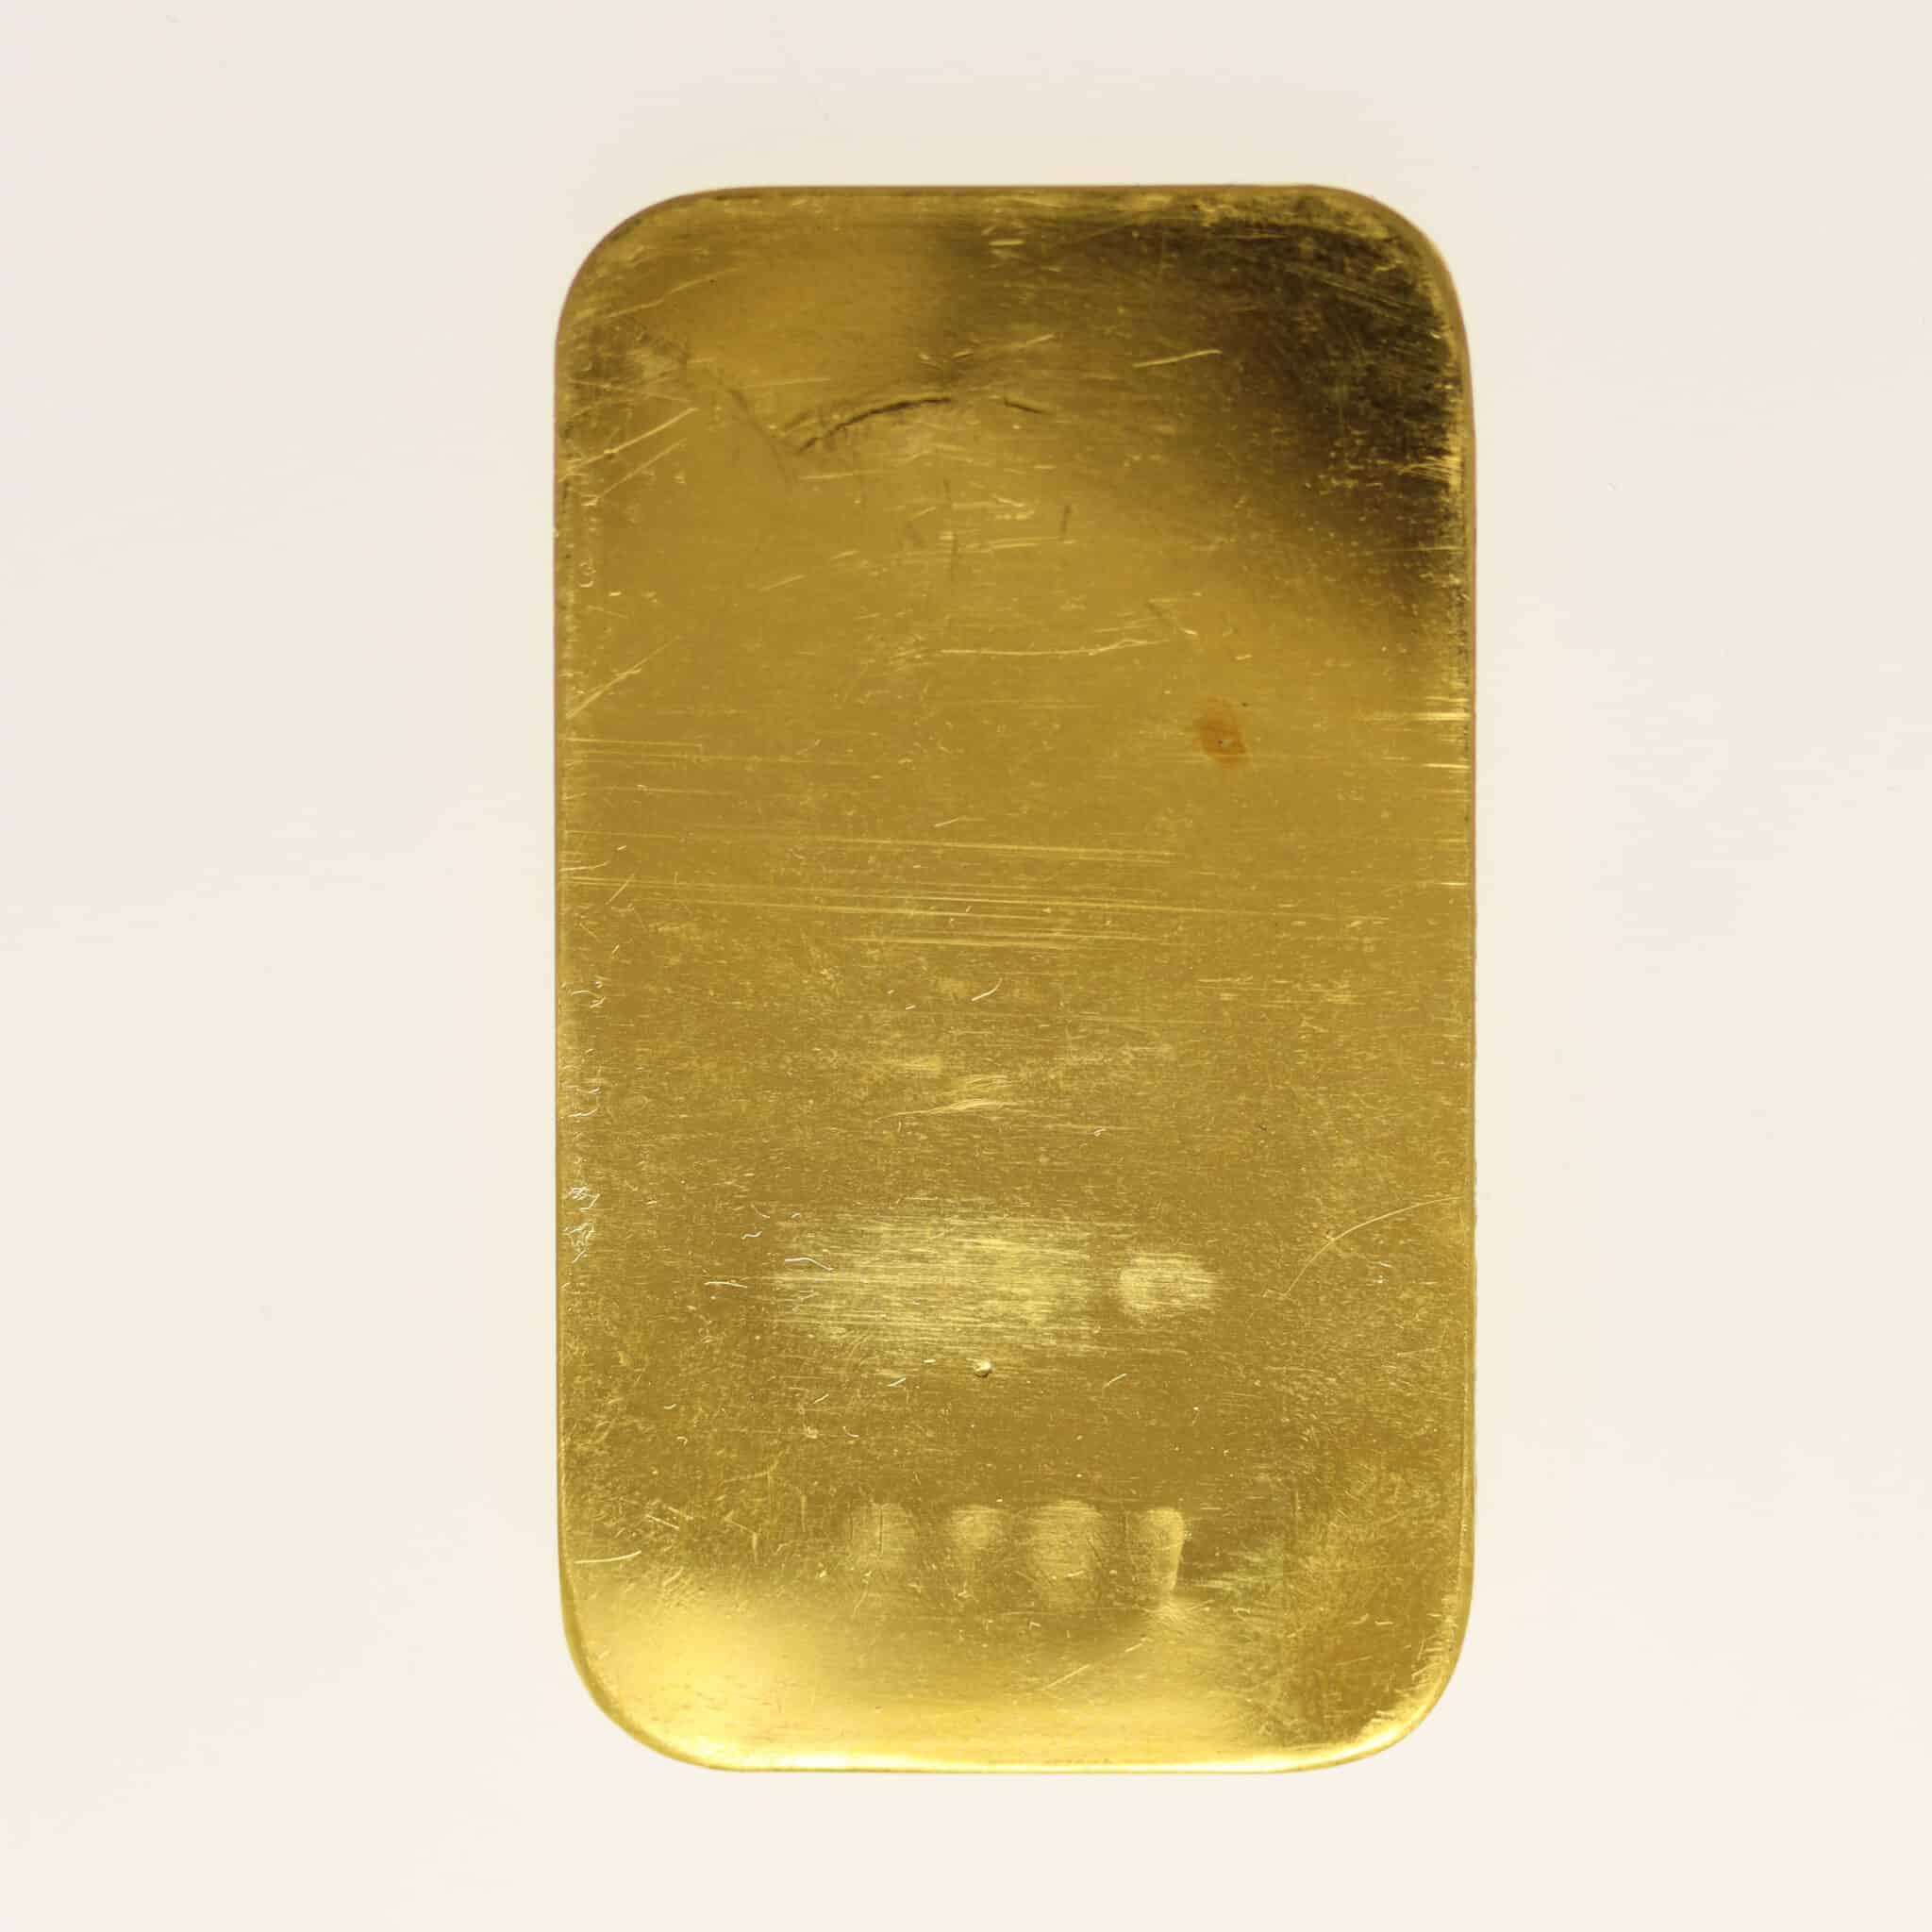 allgemein - Historische Goldbarren: Begehrtes Altgold erzählt die Geschichte des Goldhandels